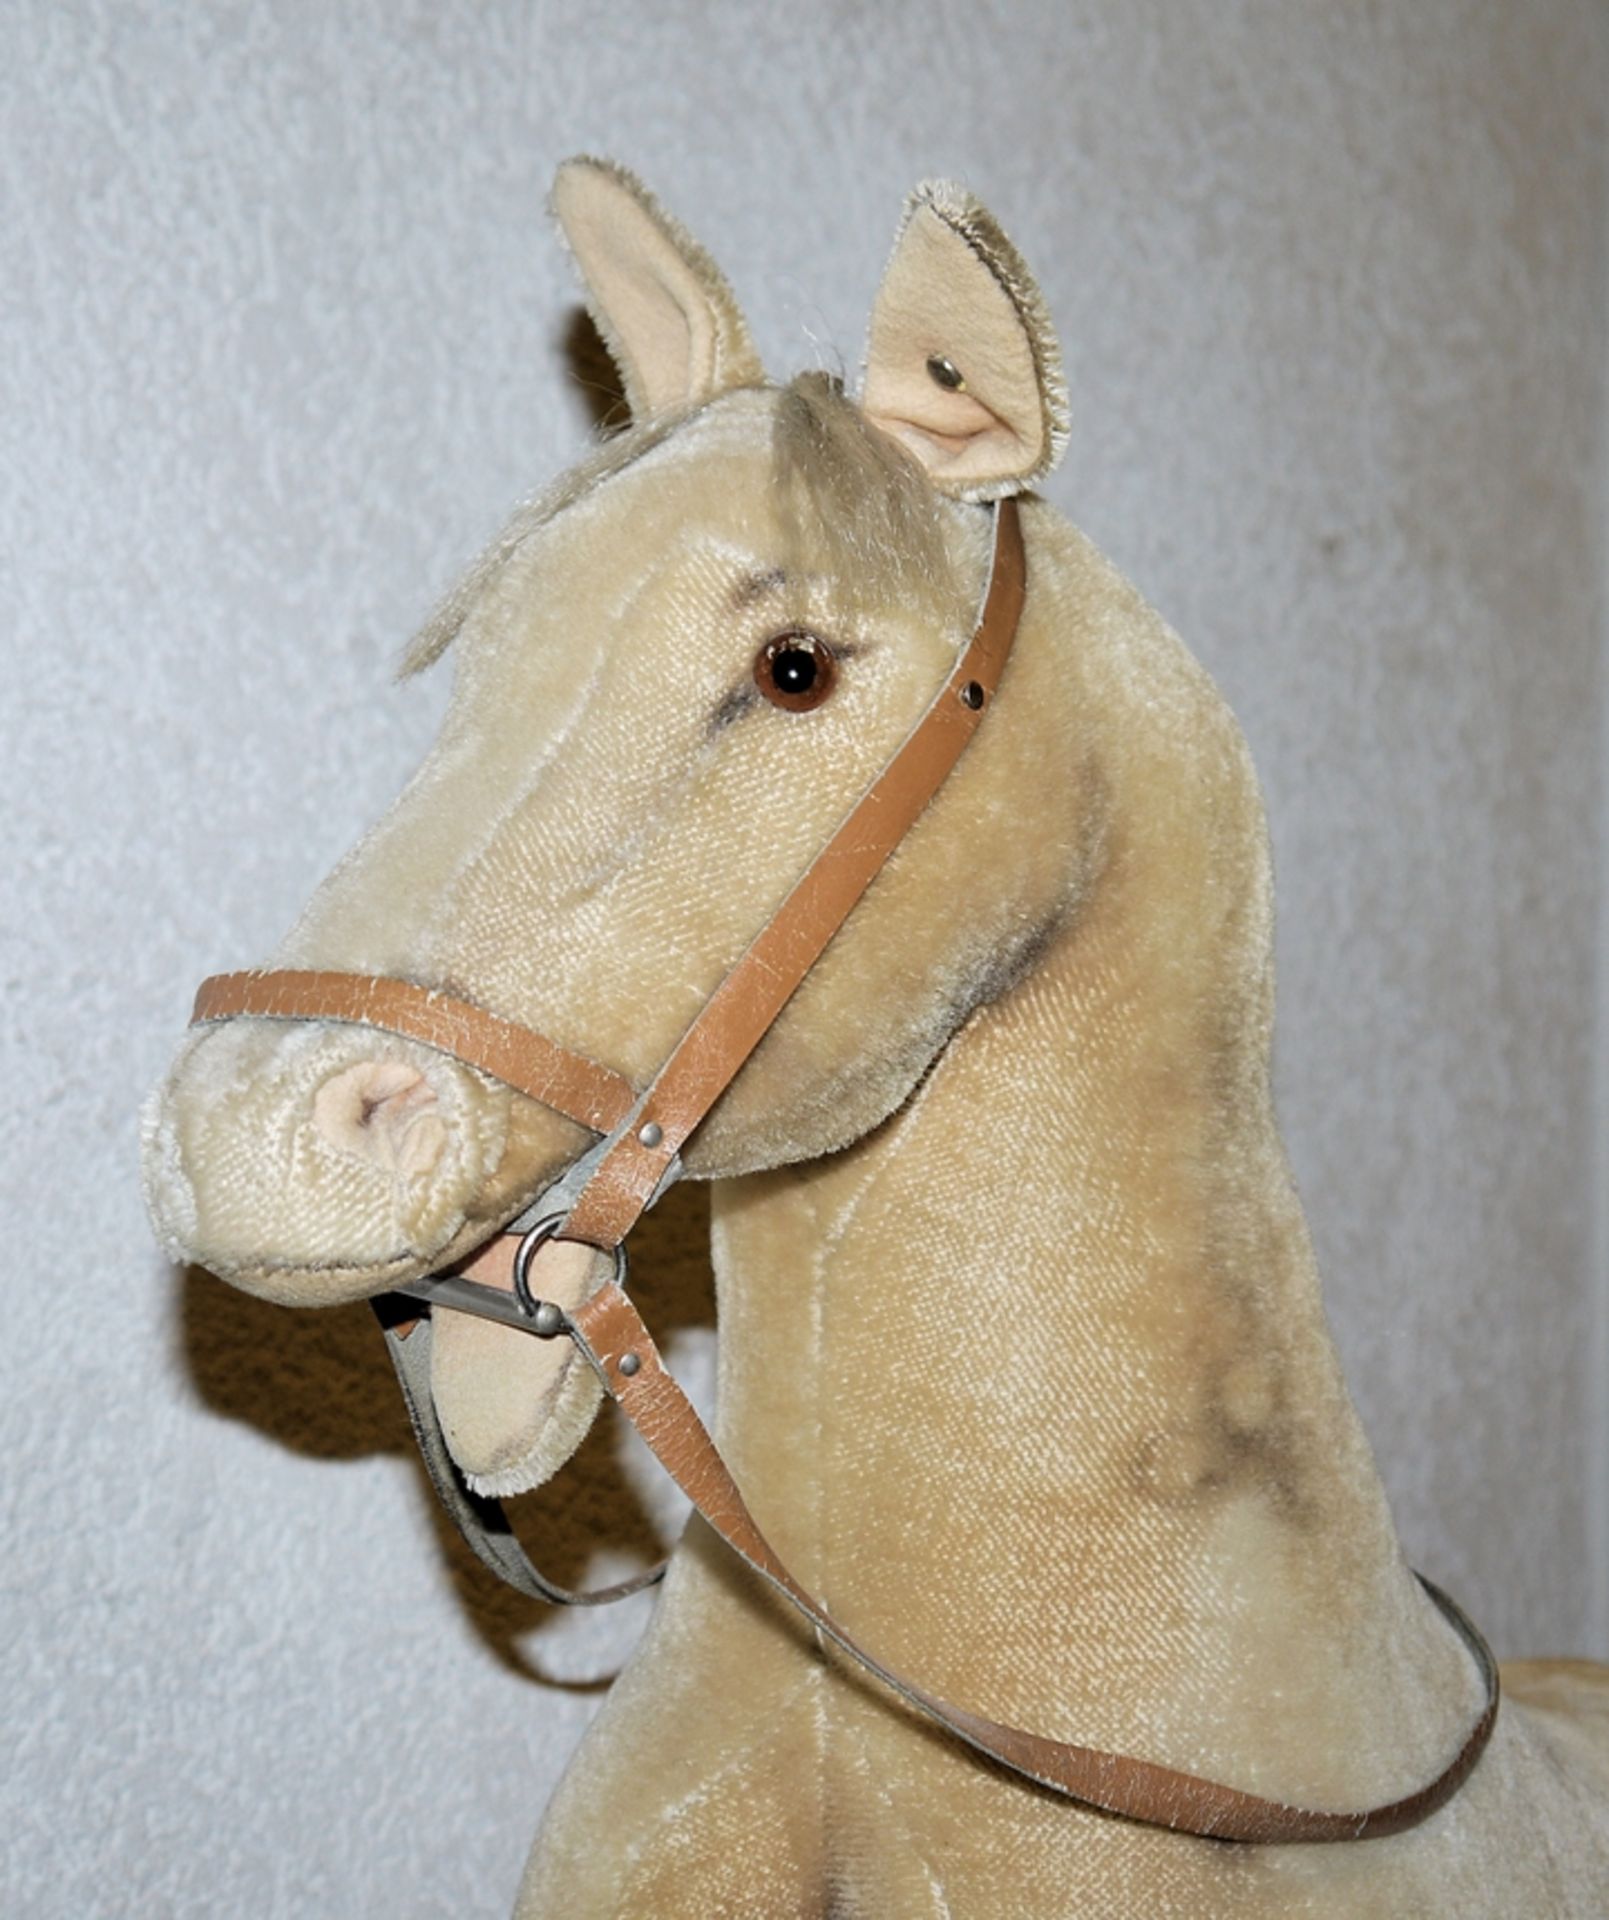 Rarität für Steiff Sammler*innen: Großes Studio Pony um 1950/60 - Bild 2 aus 2